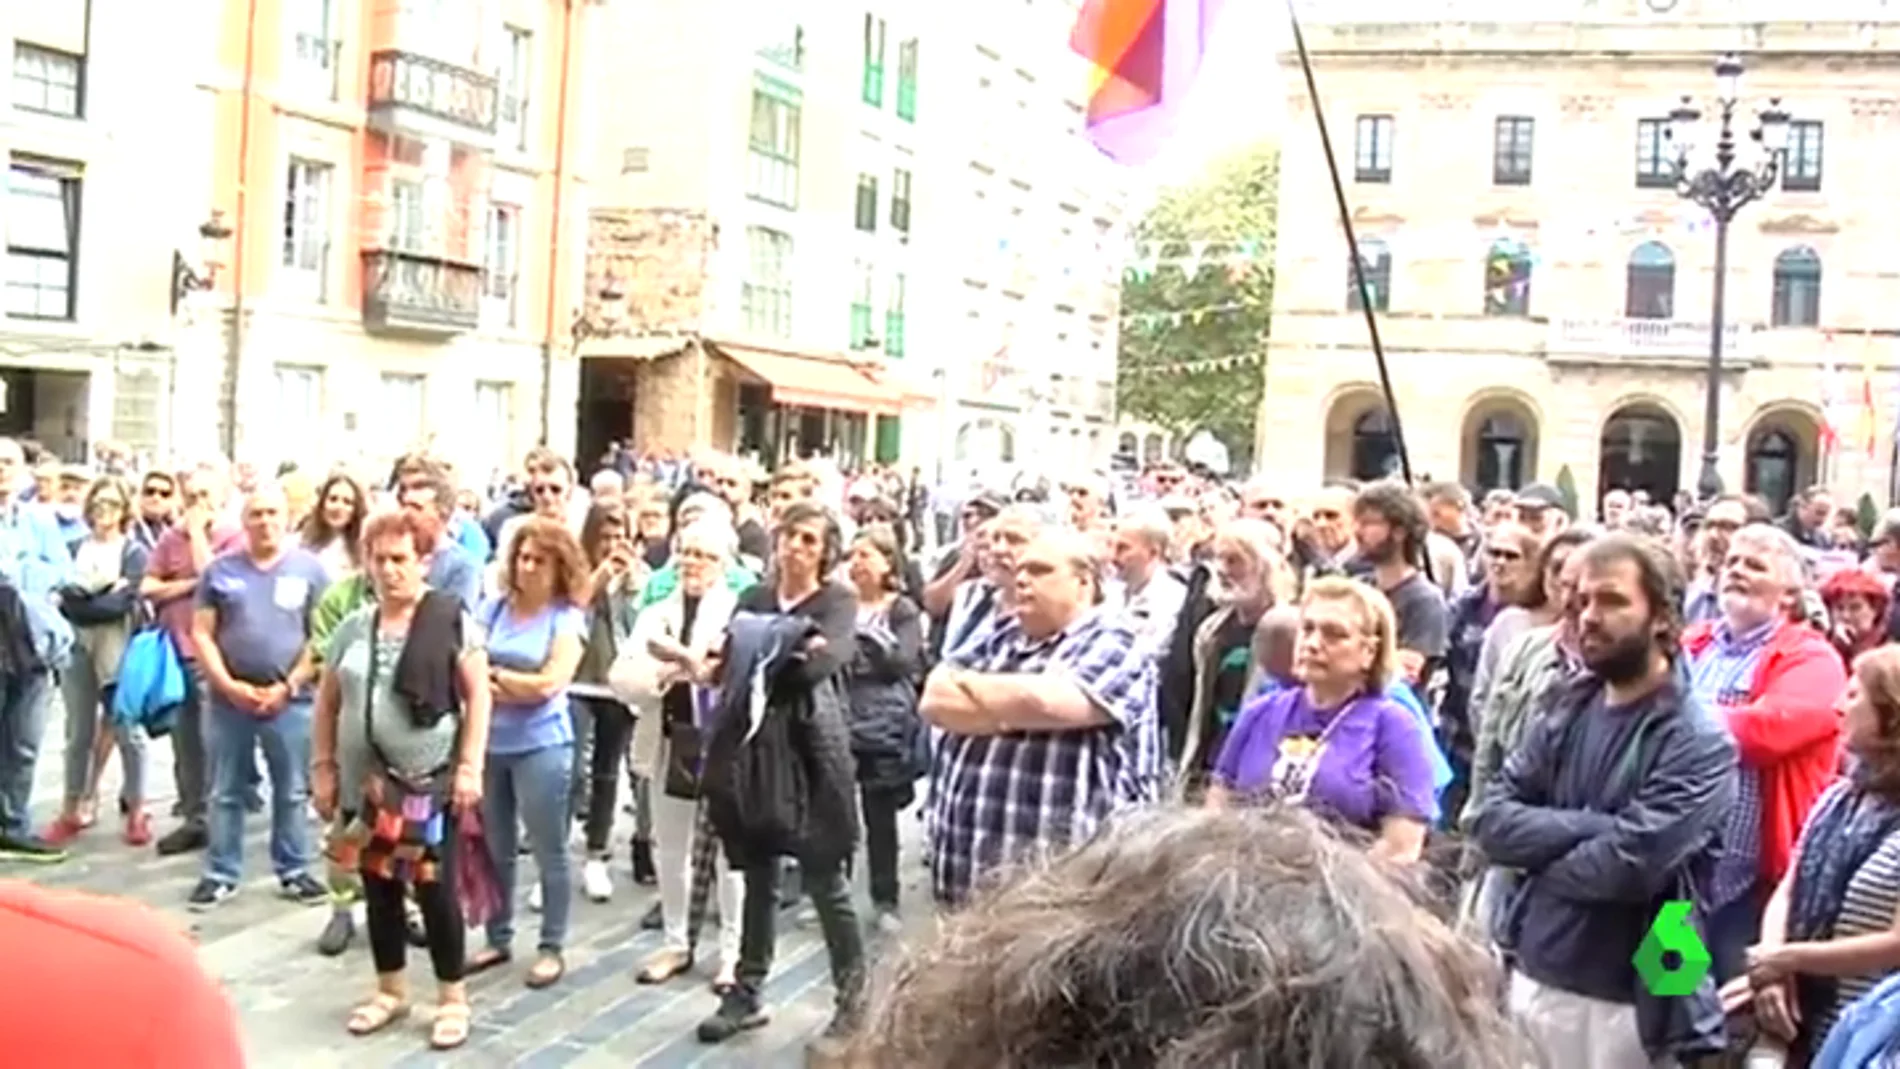 El Ayuntamiento de Gijón revoca el permiso para celebrar un debate sobre el referéndum del 1-O: "Es un acto de censura"